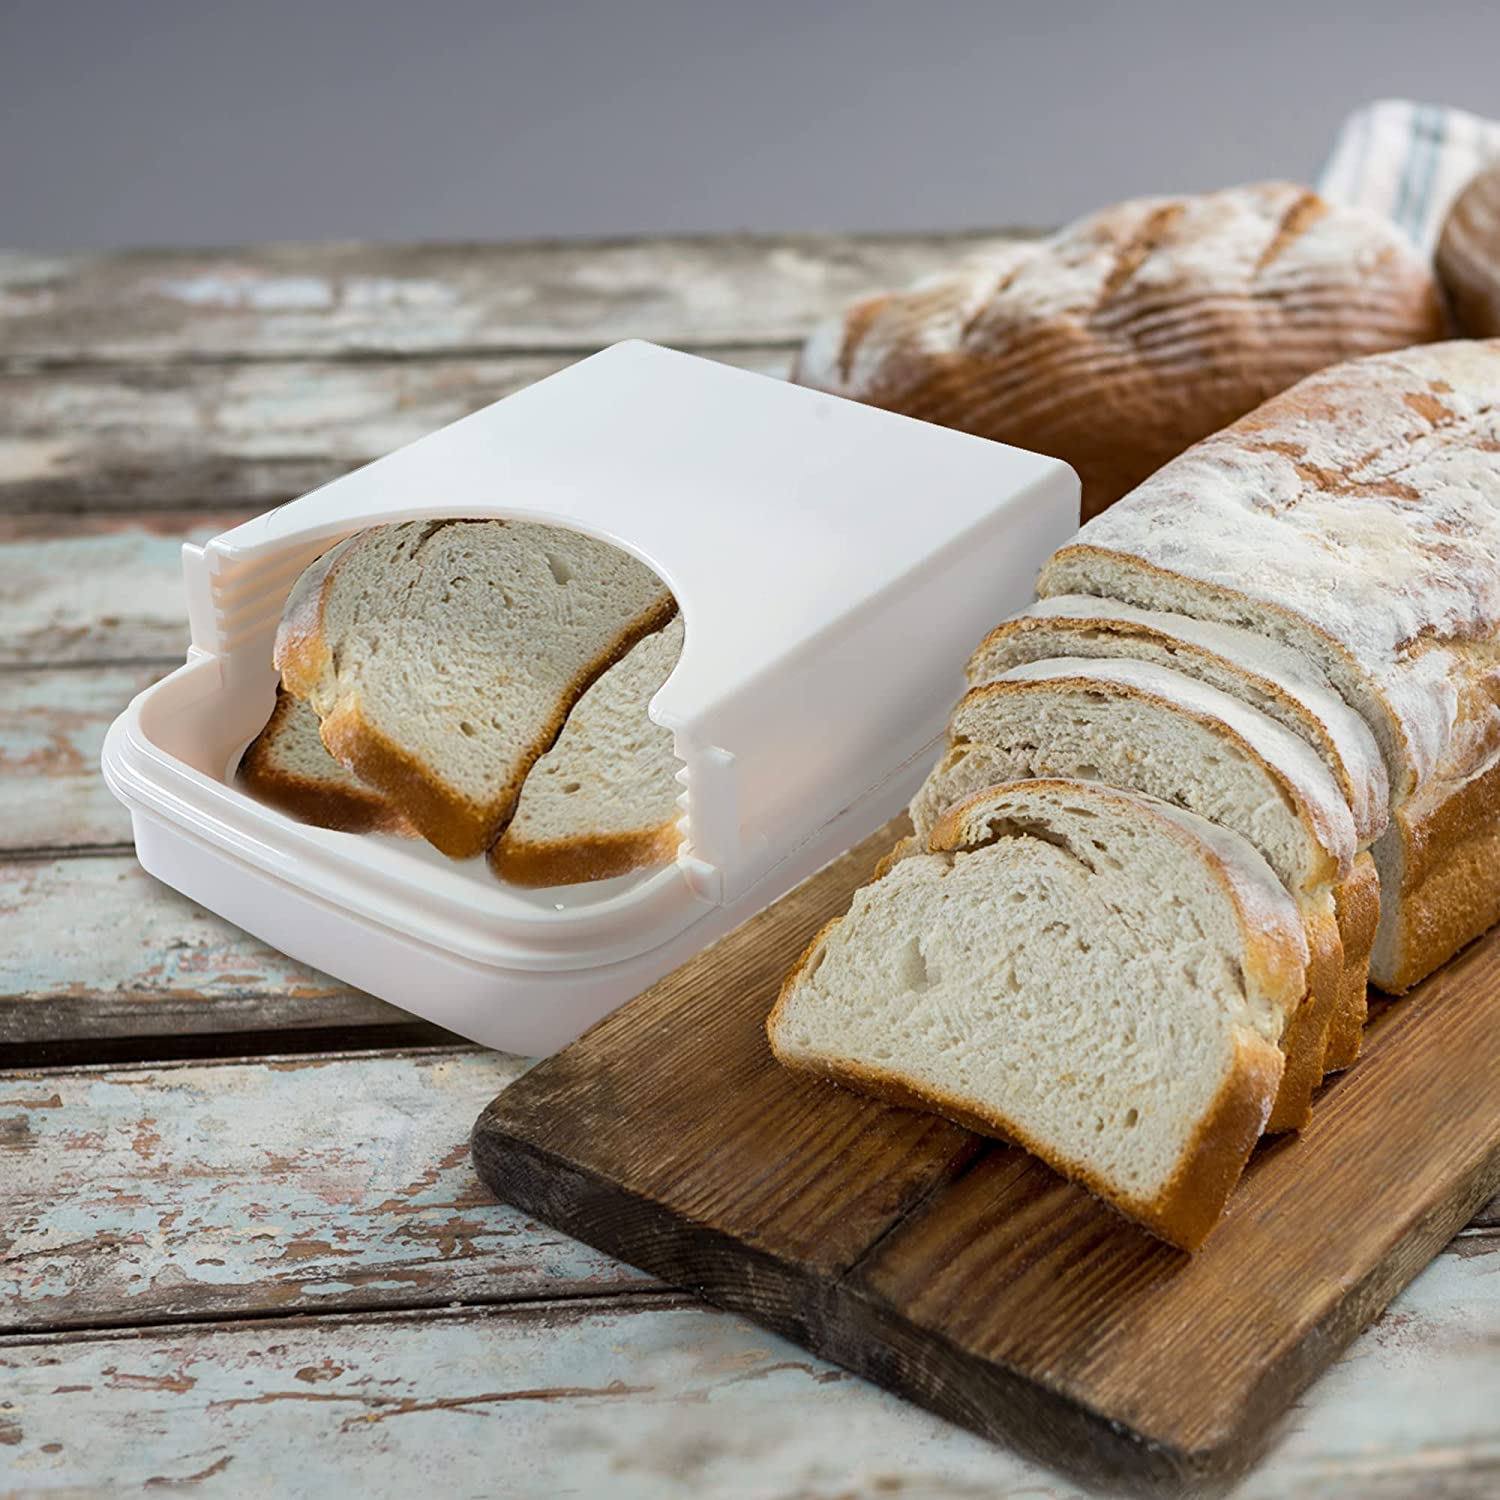 https://www.kitchenthinker.com/wp-content/uploads/2023/03/KitchenThinker-Bread-Slicer-for-Homemade-Bread-2.jpg